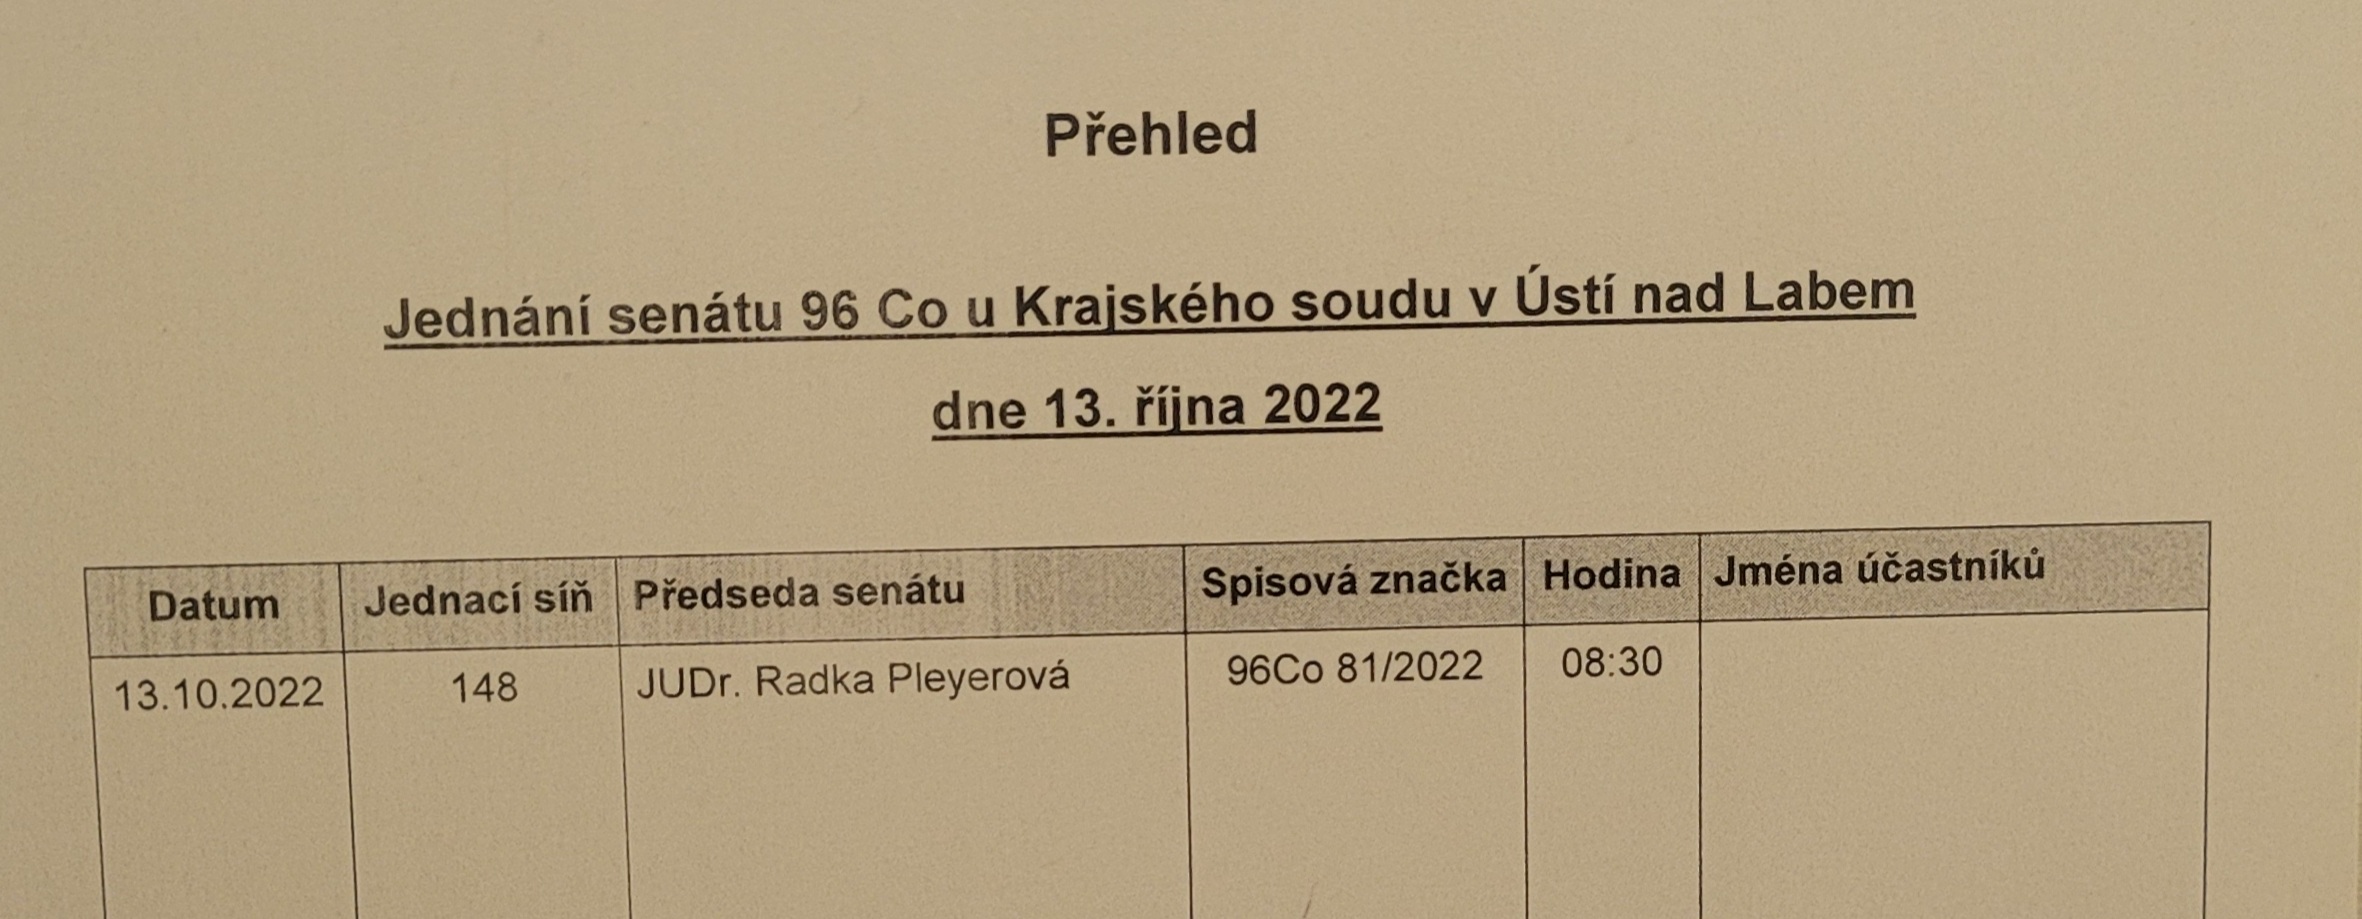 KS UnL prg 13.10.2022